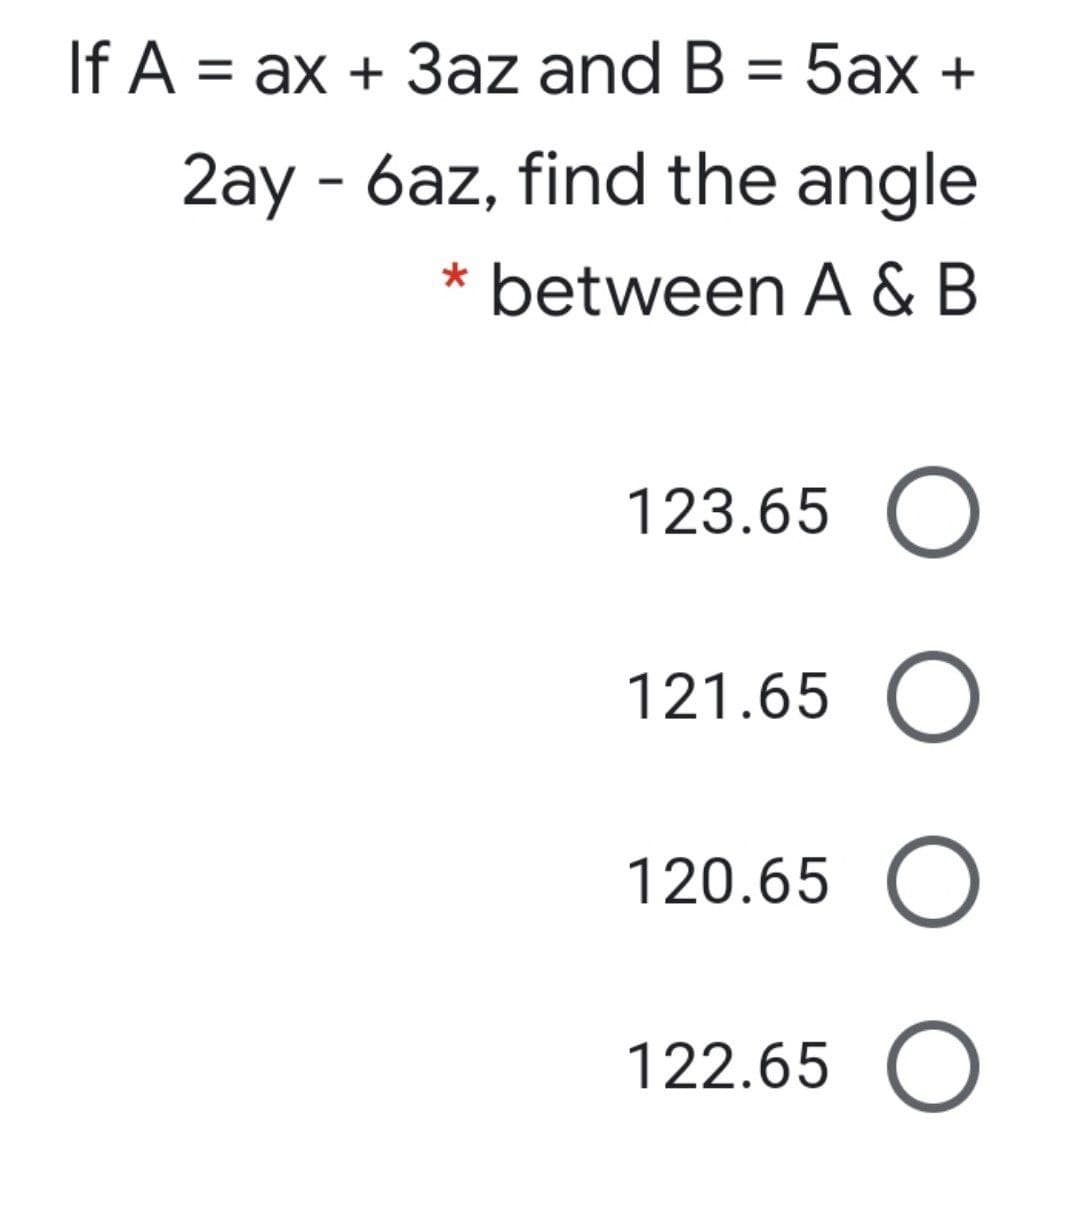 If A =
ax + 3az and B = 5ax +
%3D
2ay - 6az, find the angle
* between A & B
123.65 O
121.65 O
120.65 O
122.65 O
